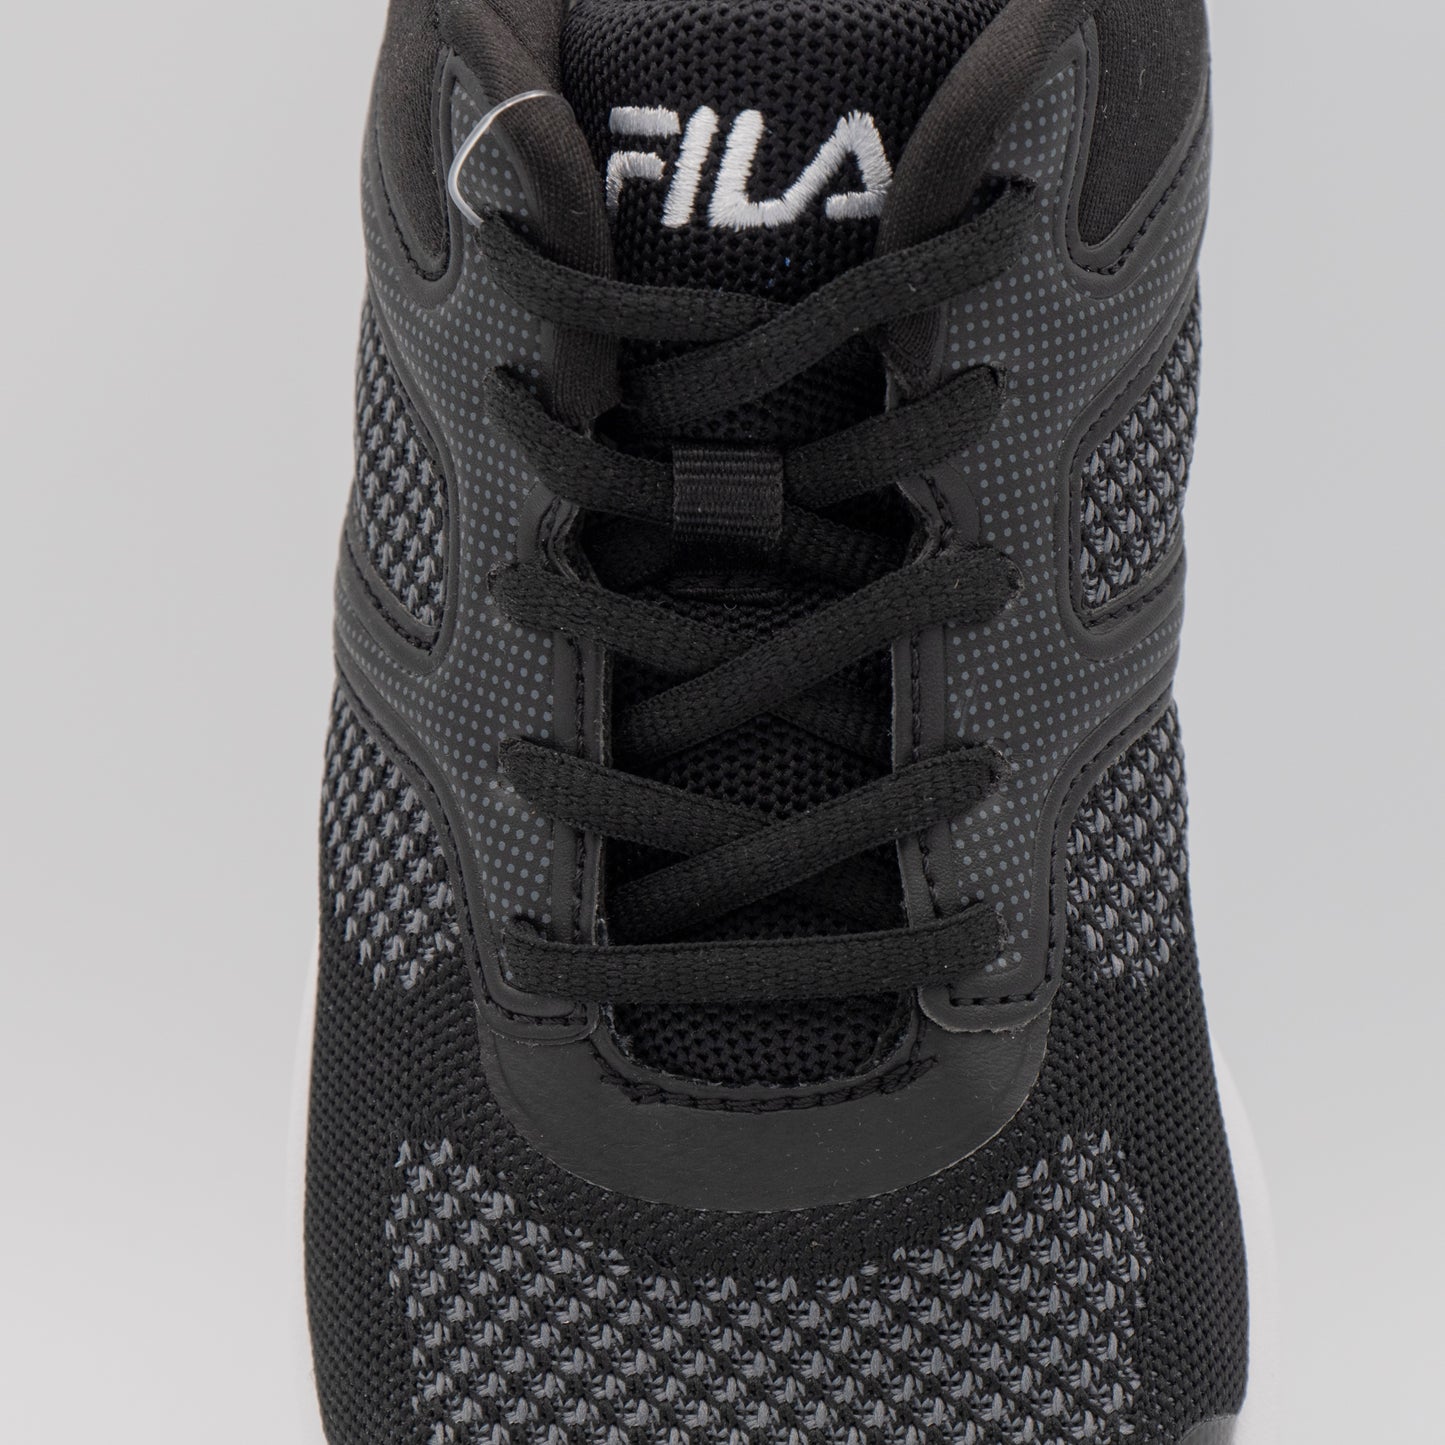 Fila - Memory Foam Frame V6 Athletic Running Shoes - Black White